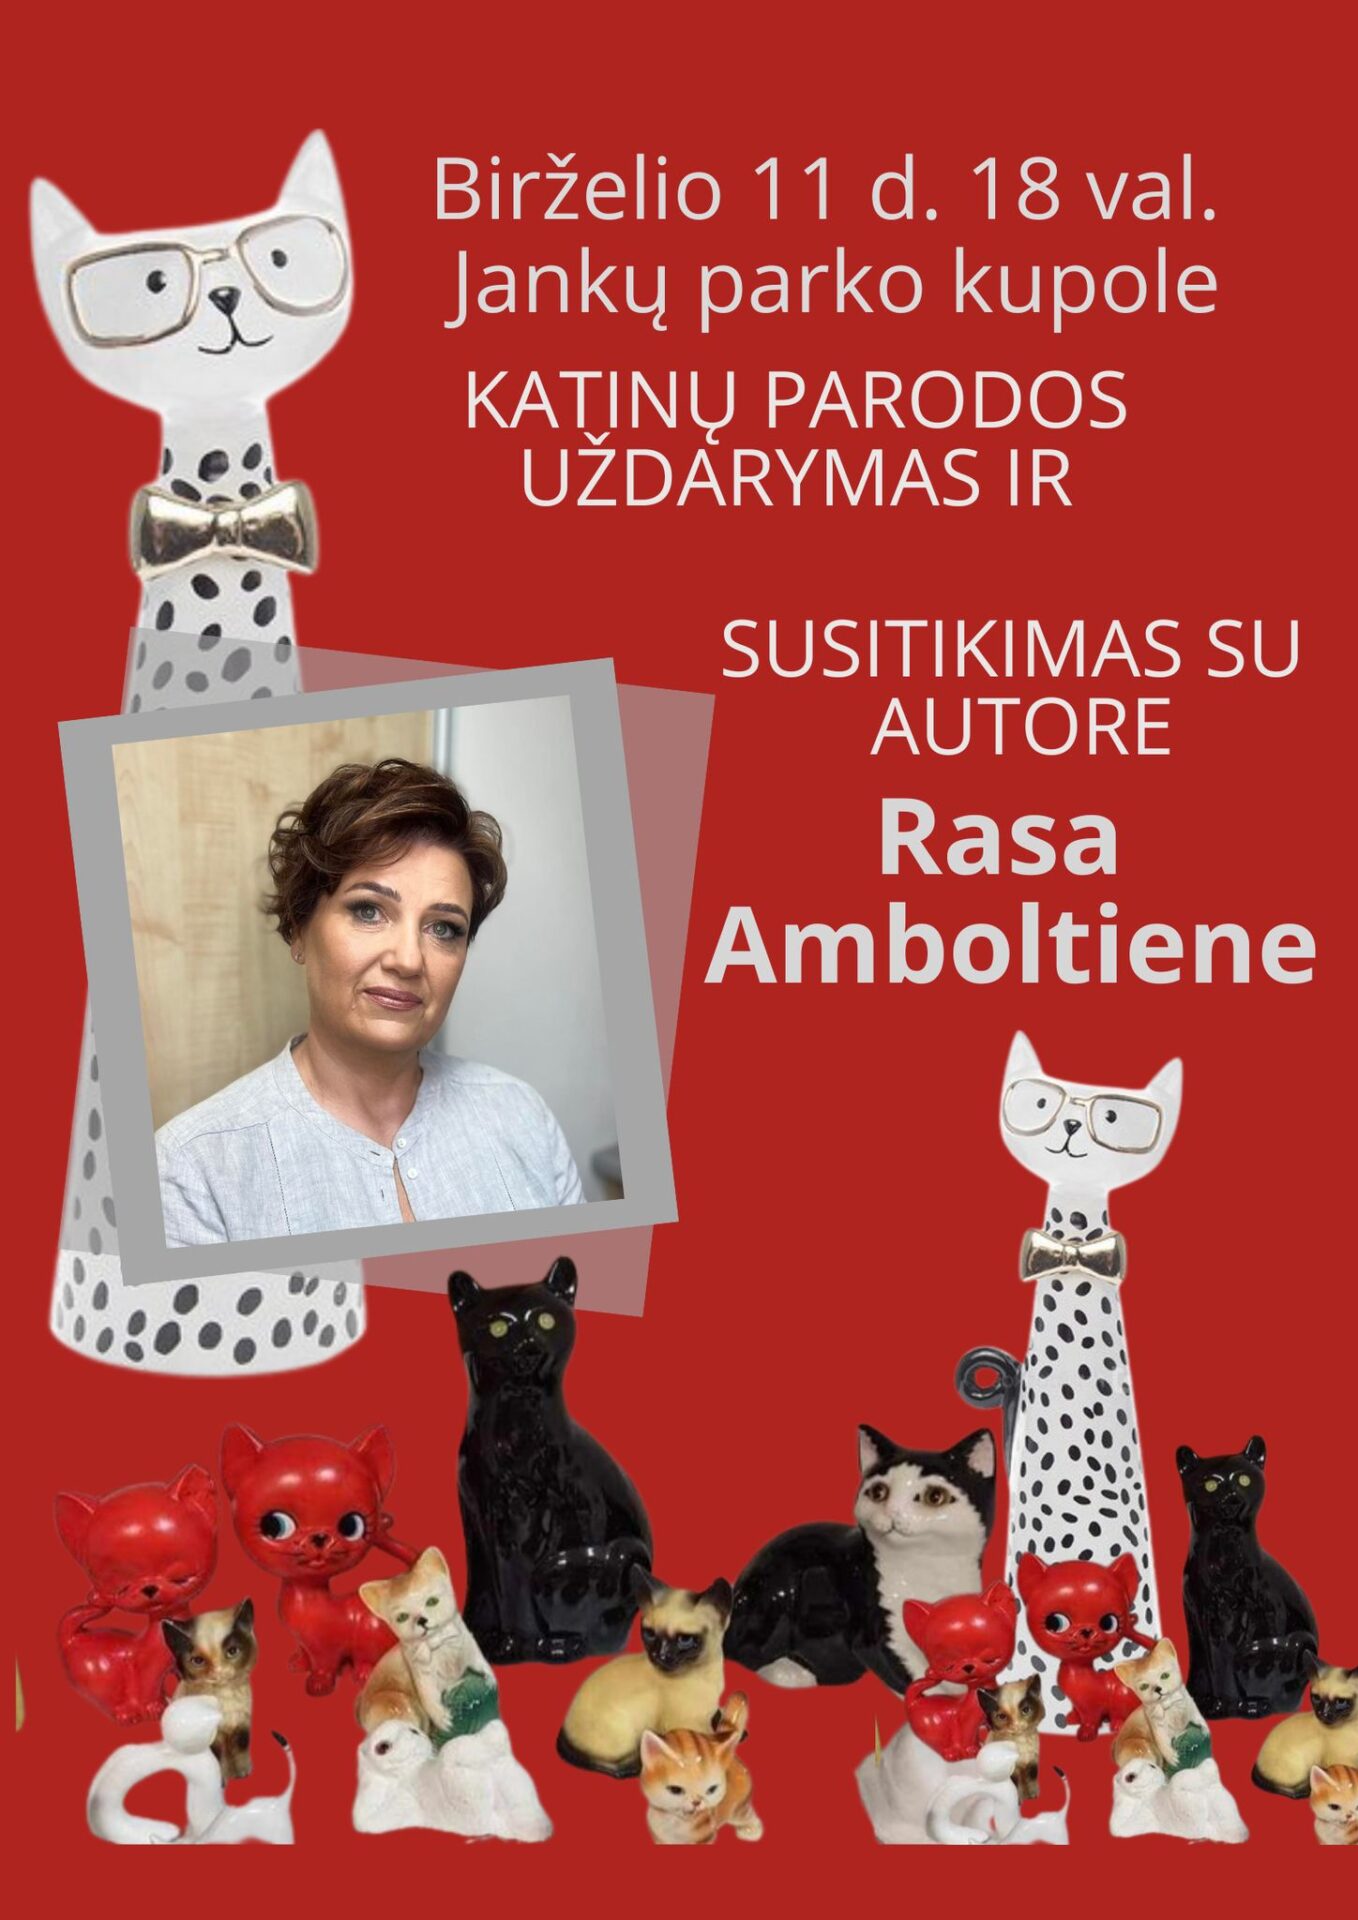 Katinų parodos uždarymas ir susitikimas su autore Rasa Amboltiene